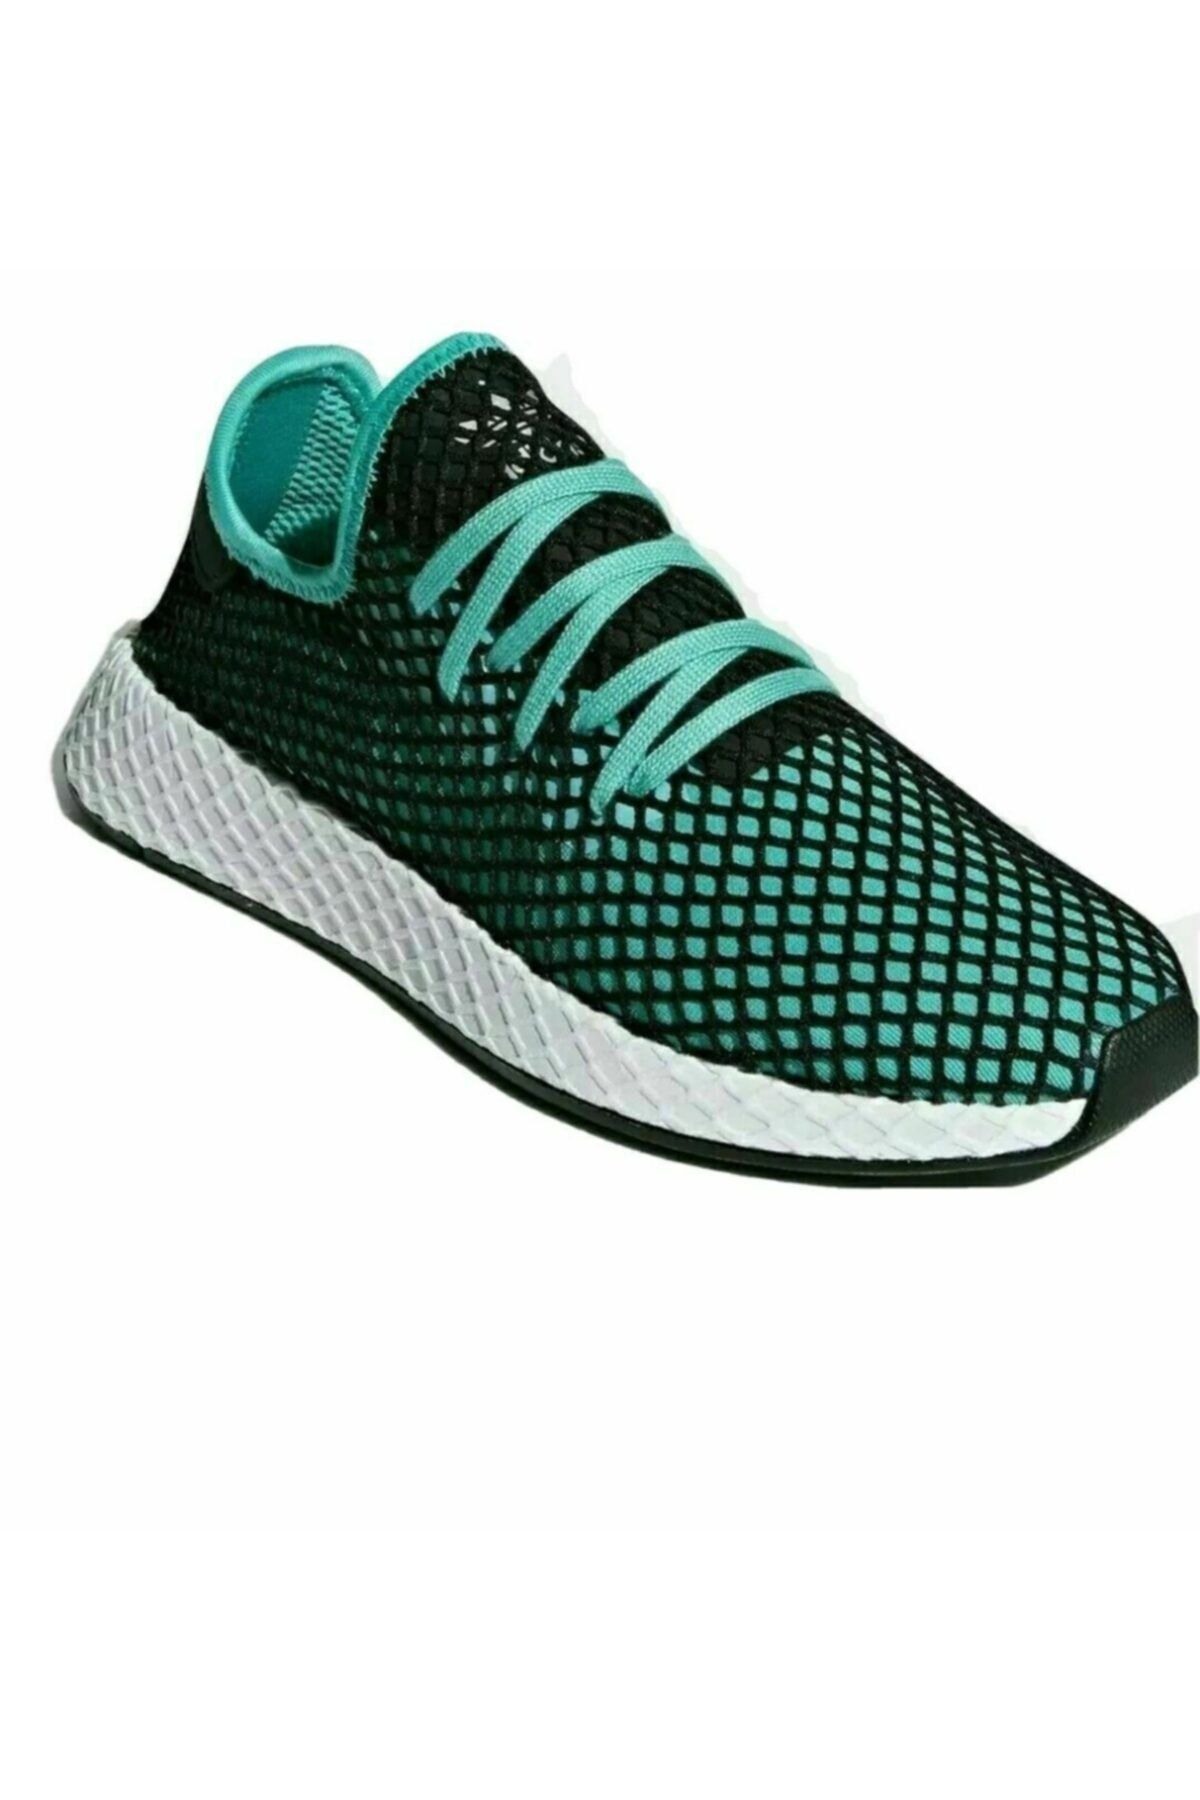 adidas Deerupt Runner Erkek Günlük Ayakkabı B41775